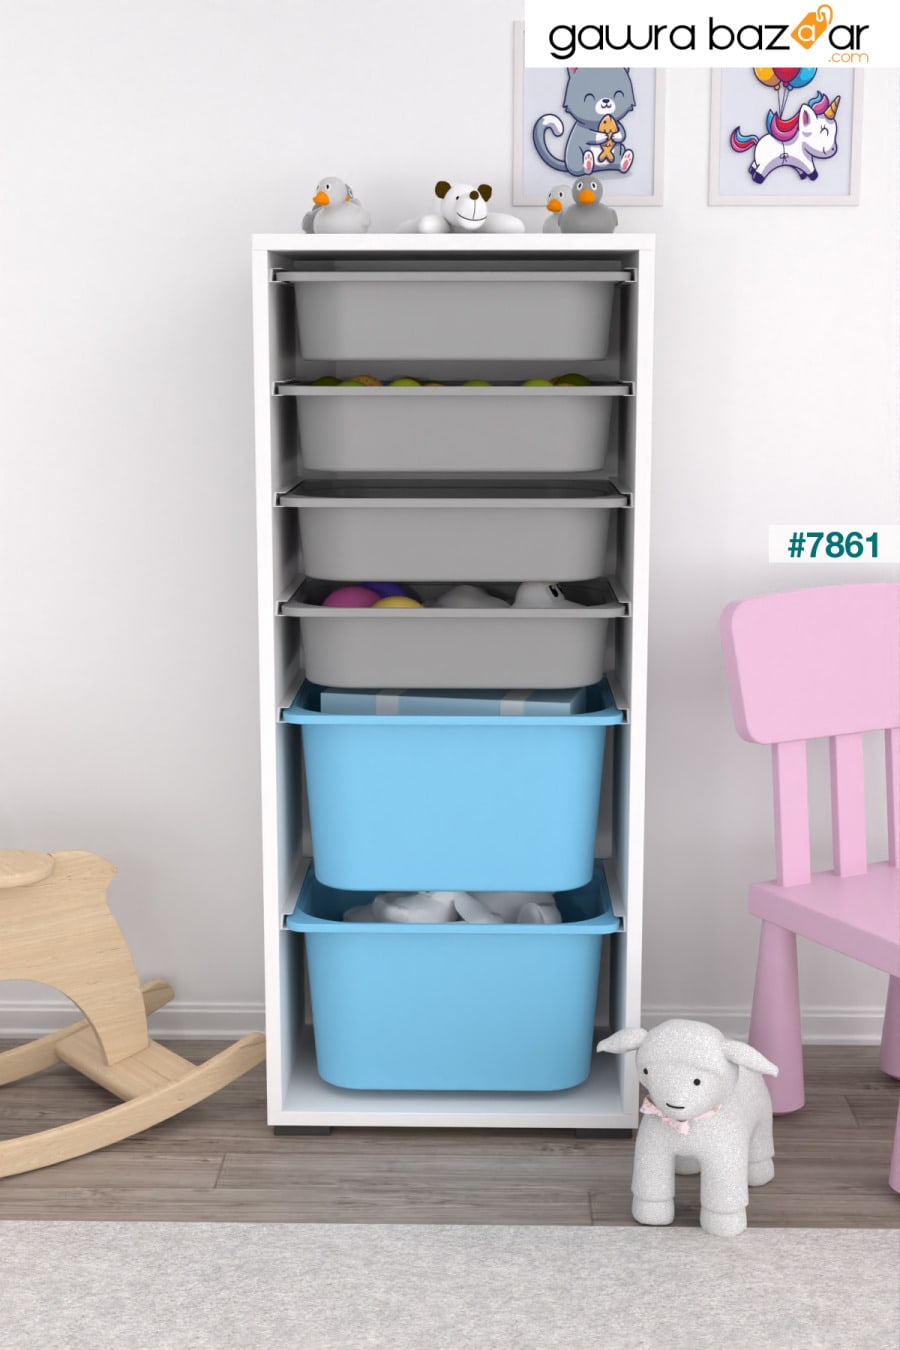 2 Big 4 خزانة ألعاب صغيرة متعددة الأغراض خزانة ألعاب للمطبخ باللون الأزرق والرمادي Pratico 0